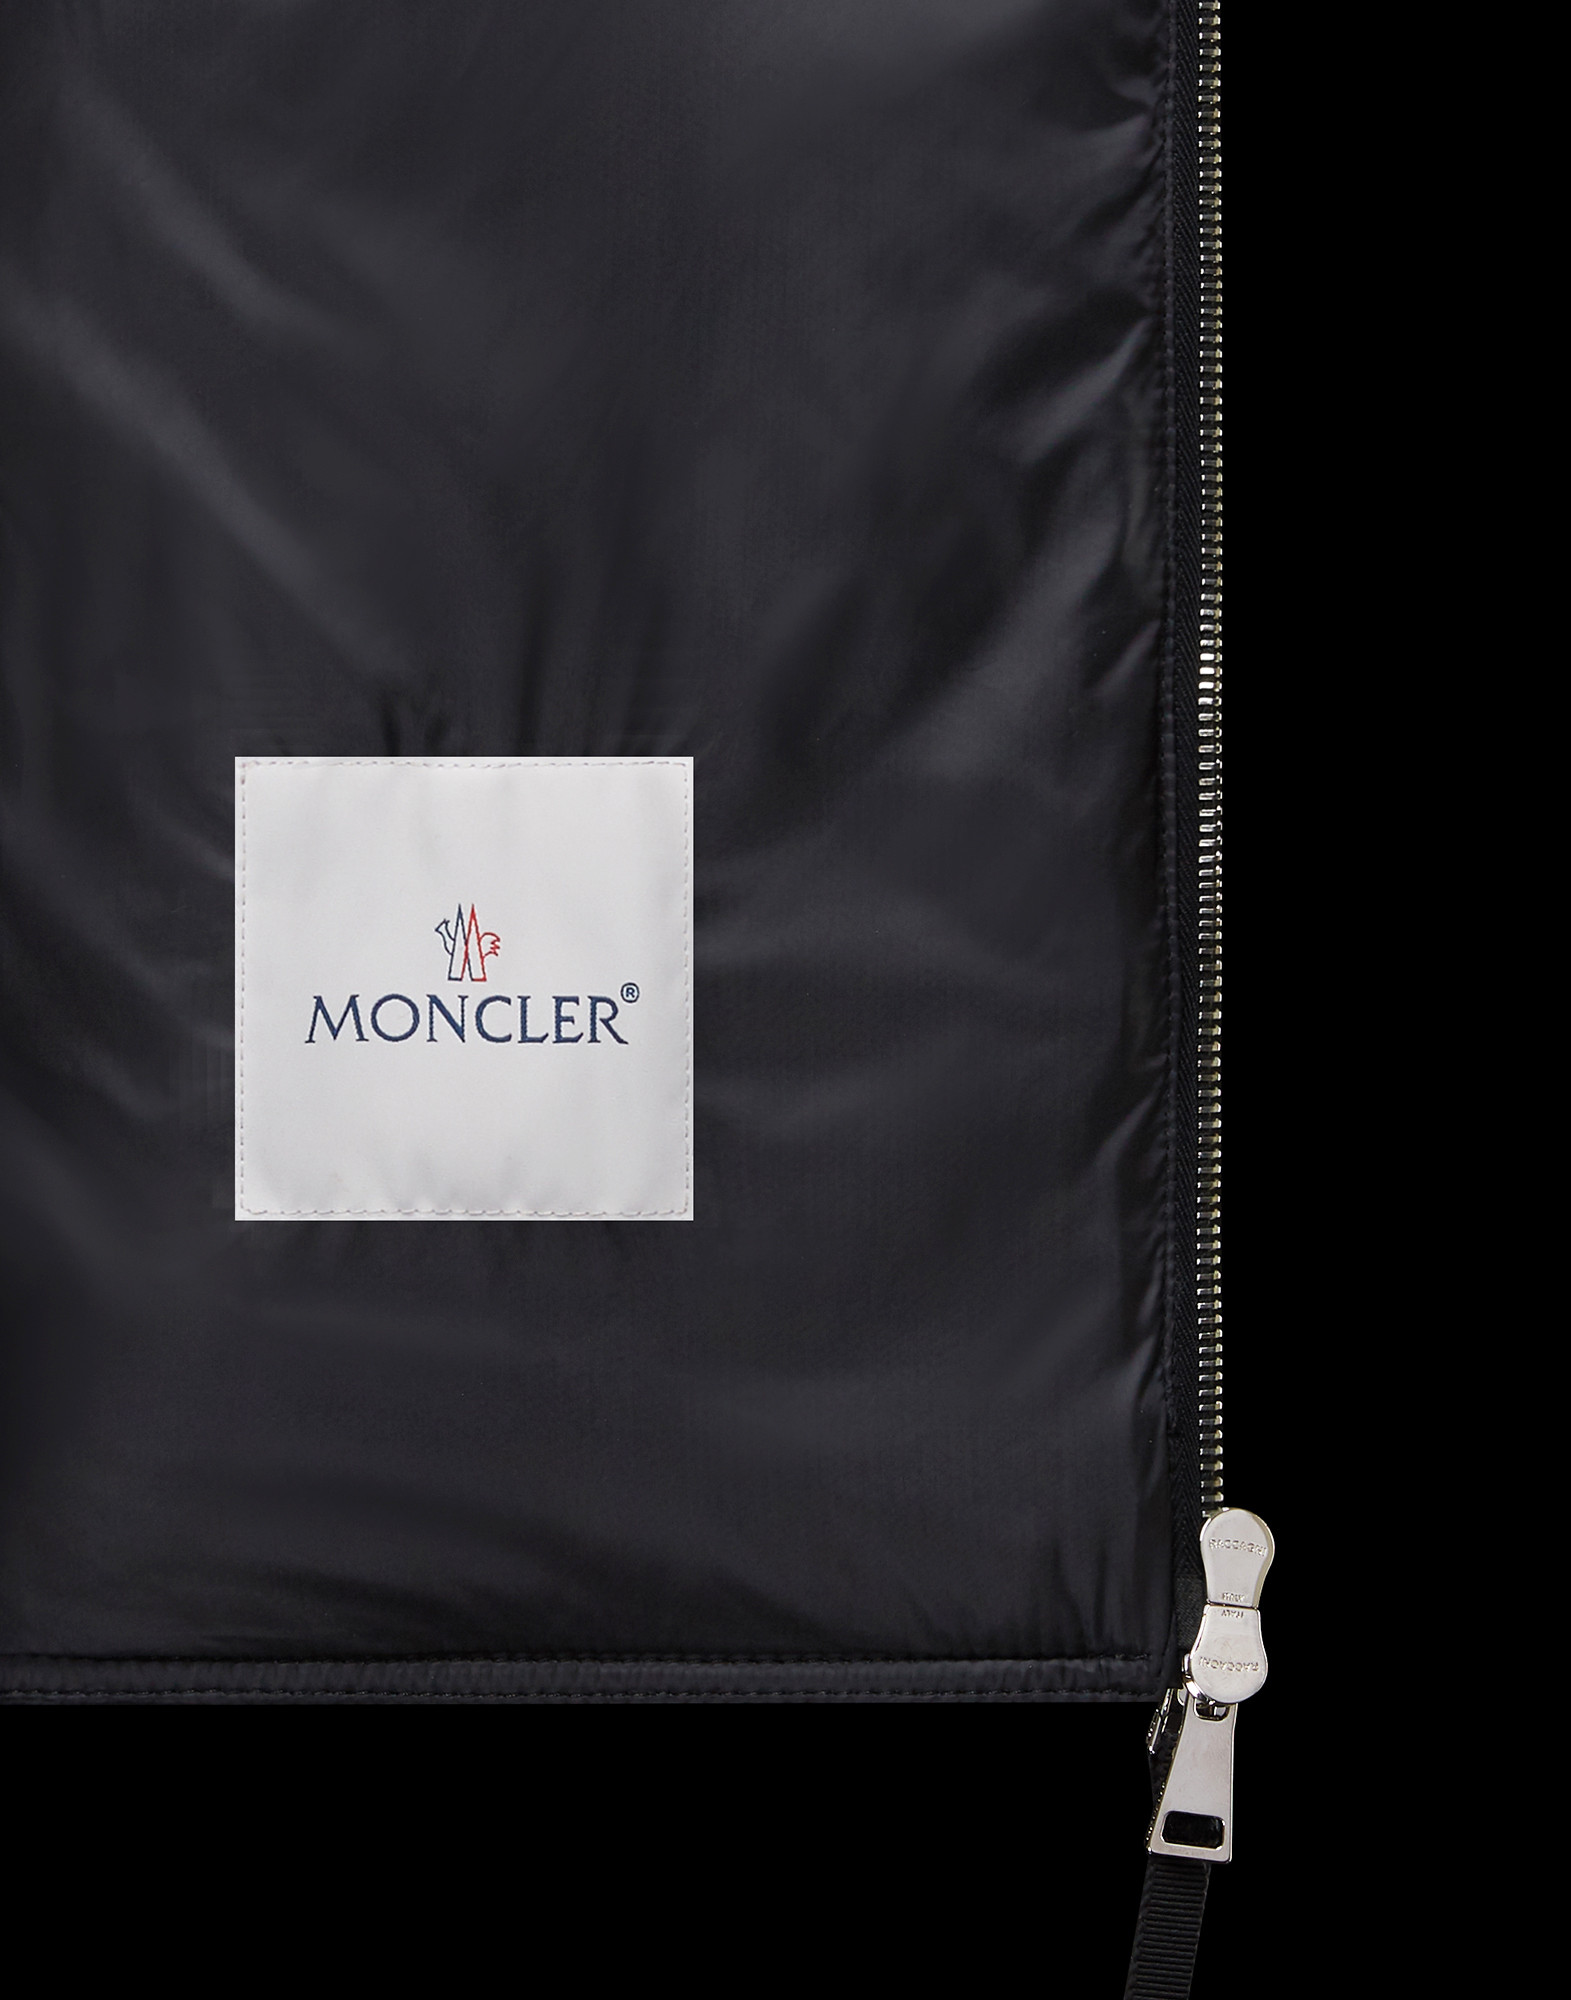 moncler premiere collection